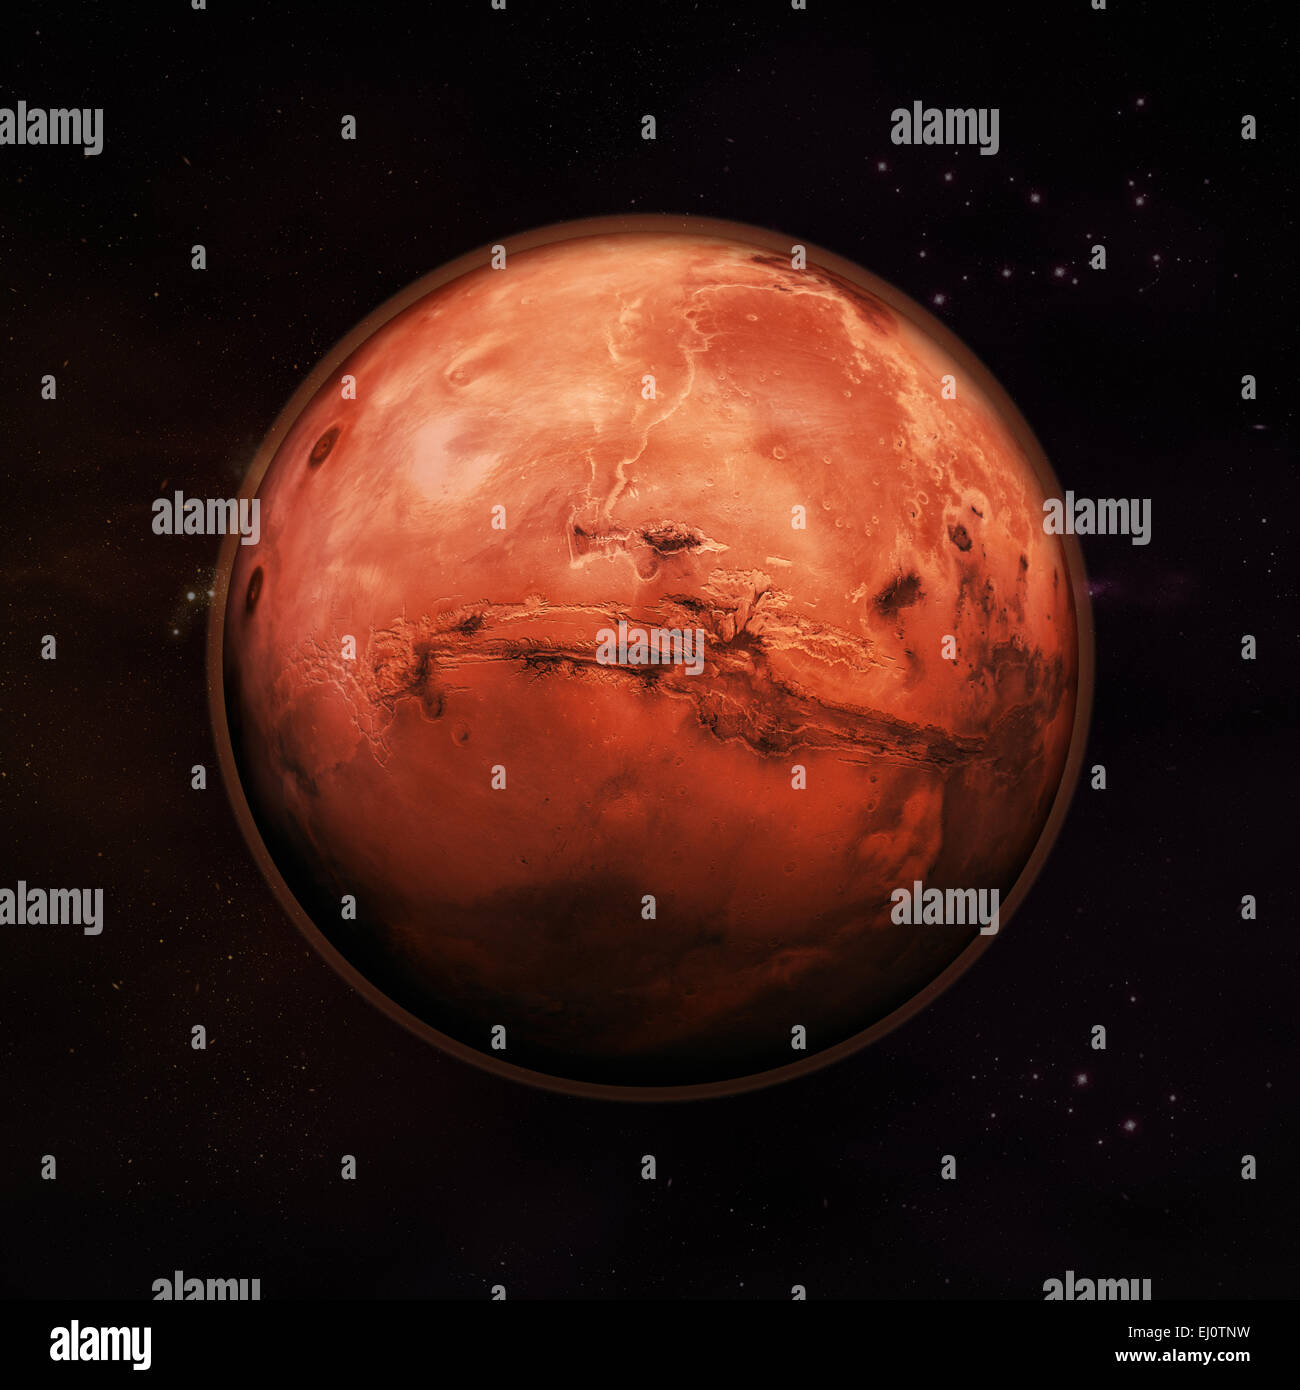 Planète Mars dans l'espace, red rock planet avec atmosphère rouge avec des étoiles en arrière-plan. Éléments de cette image fournie par la NASA Banque D'Images